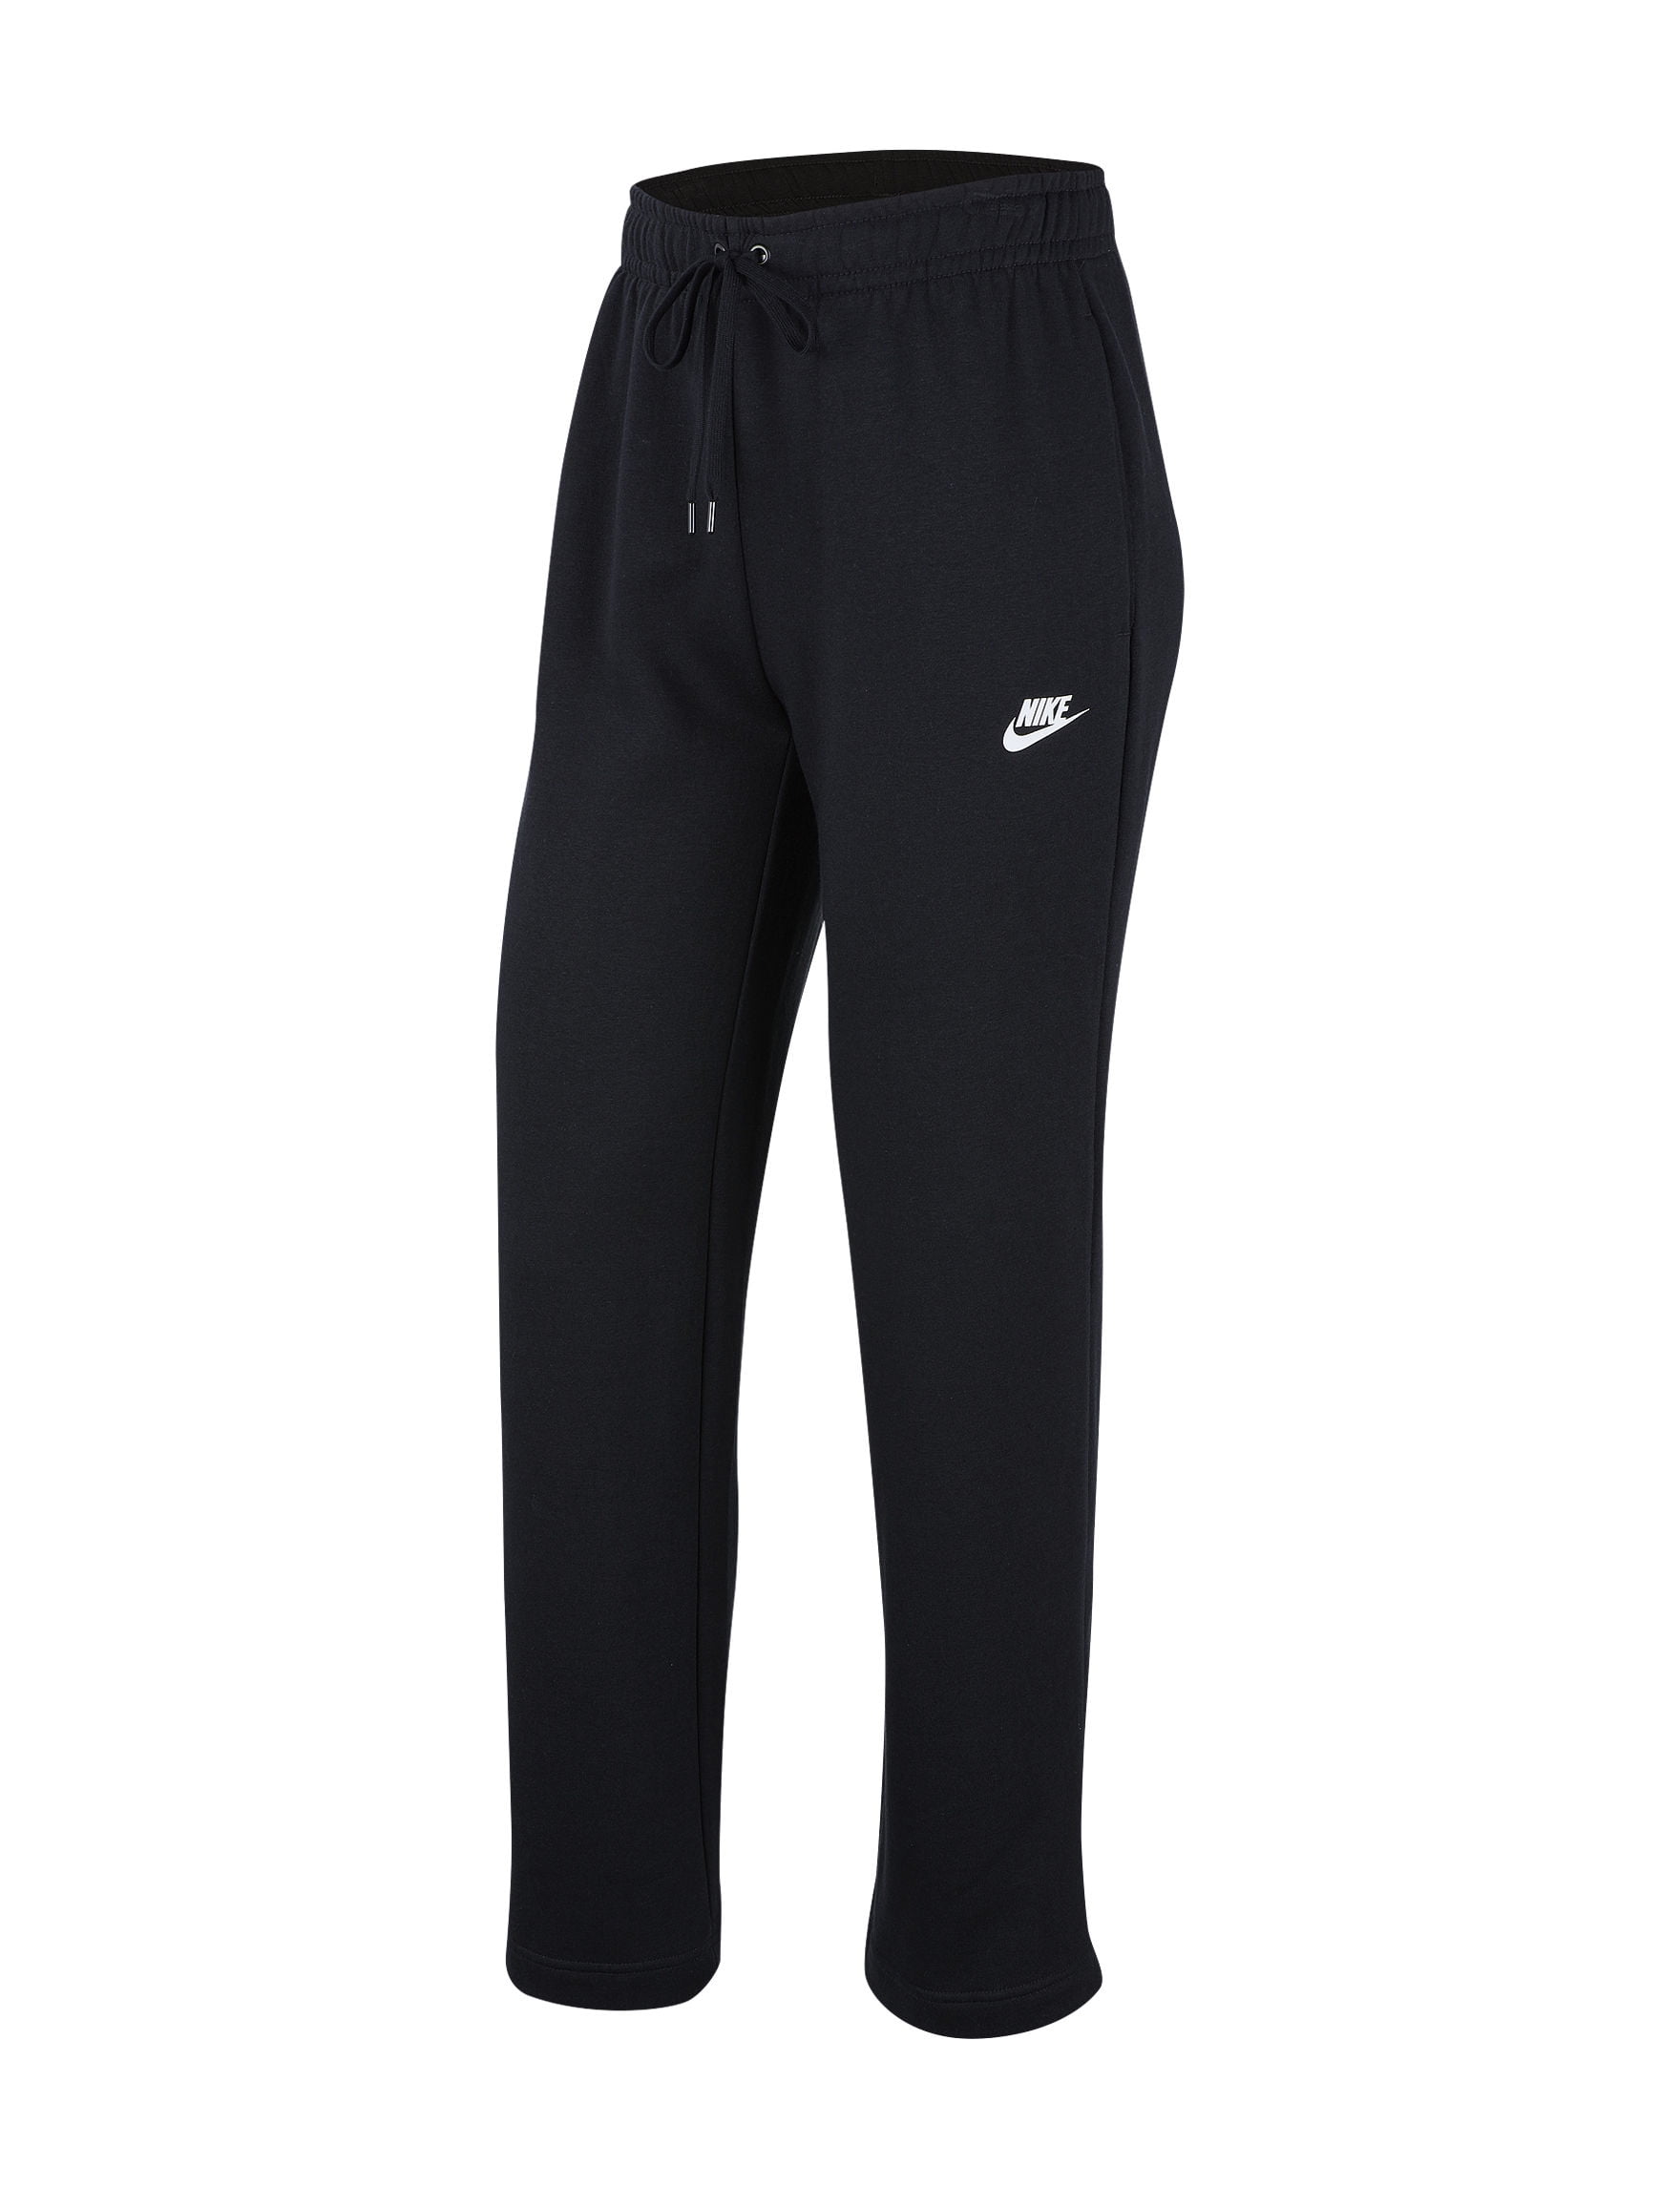 NIKE Sportswear Size Fleece Club Loose Fit Pants (Black, 3X) - Walmart.com